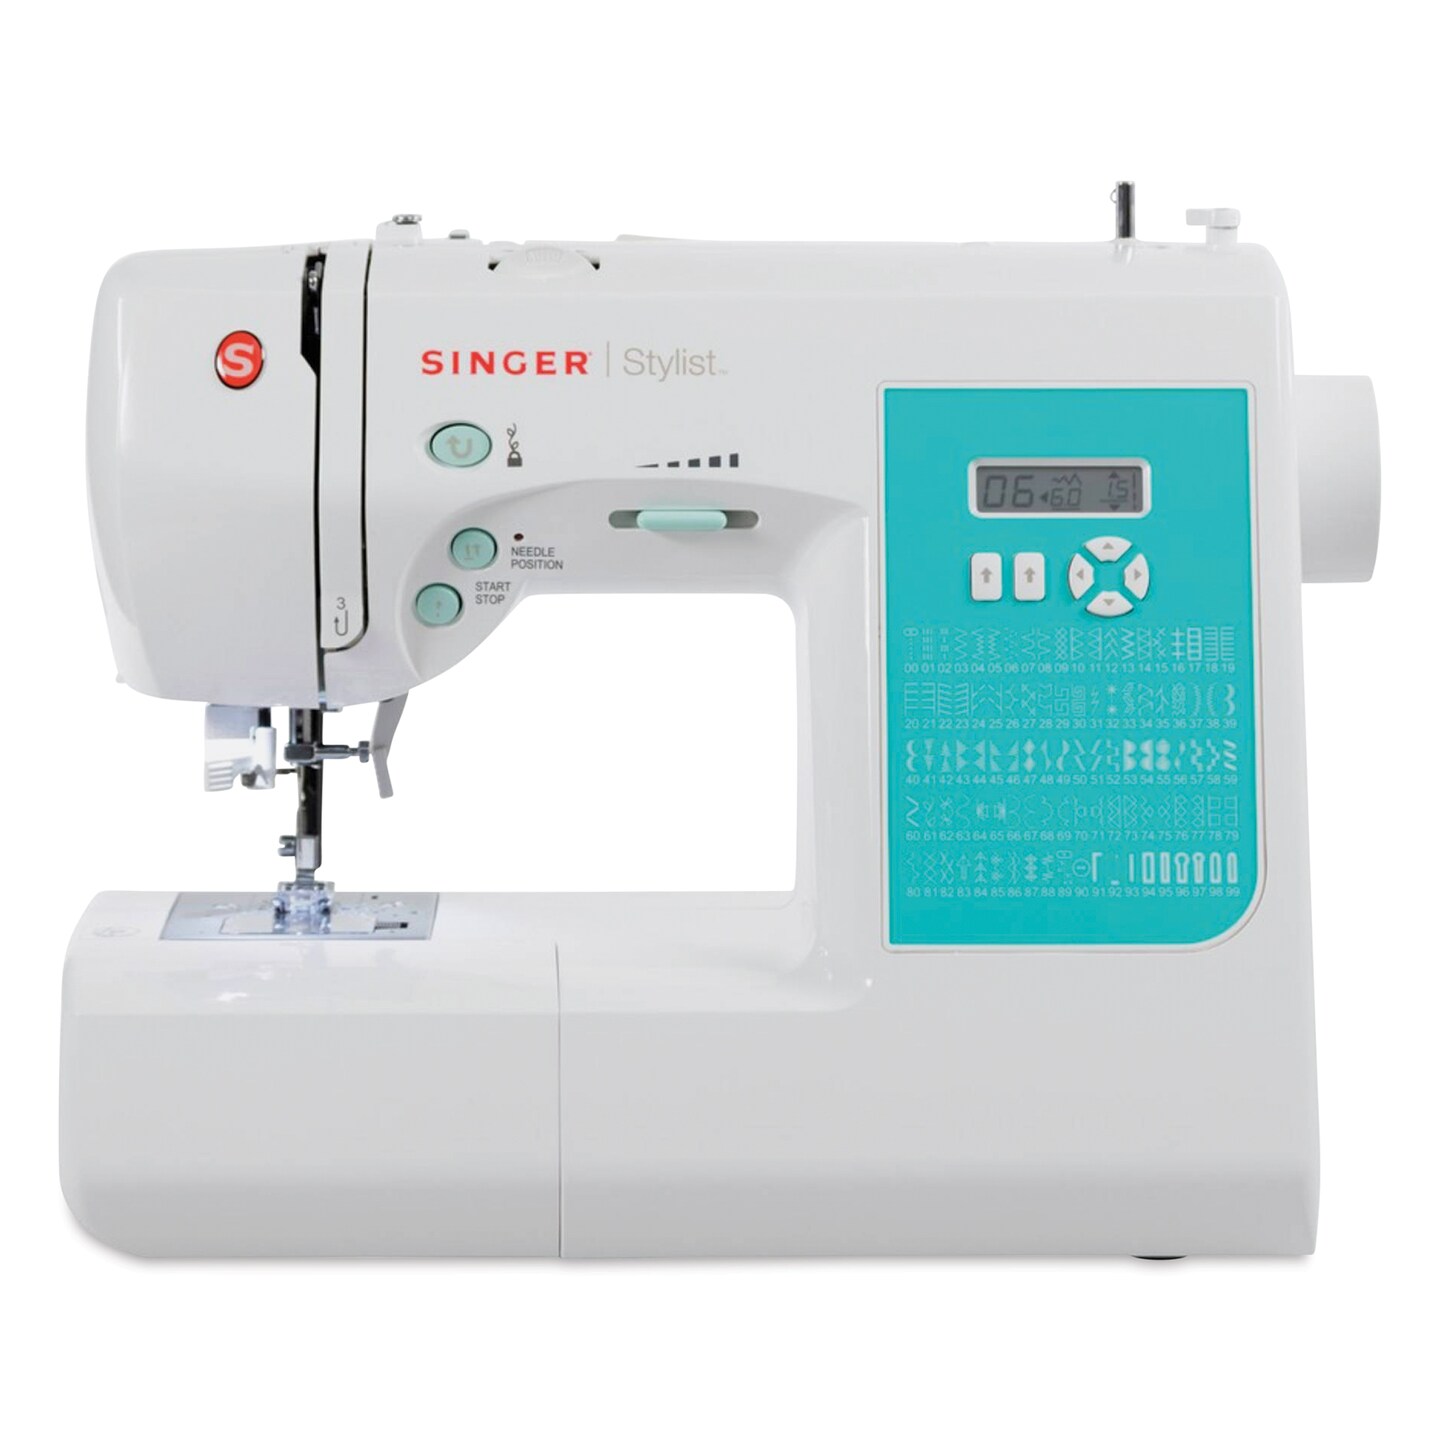 Singer Stylist 7258 Sewing Machine